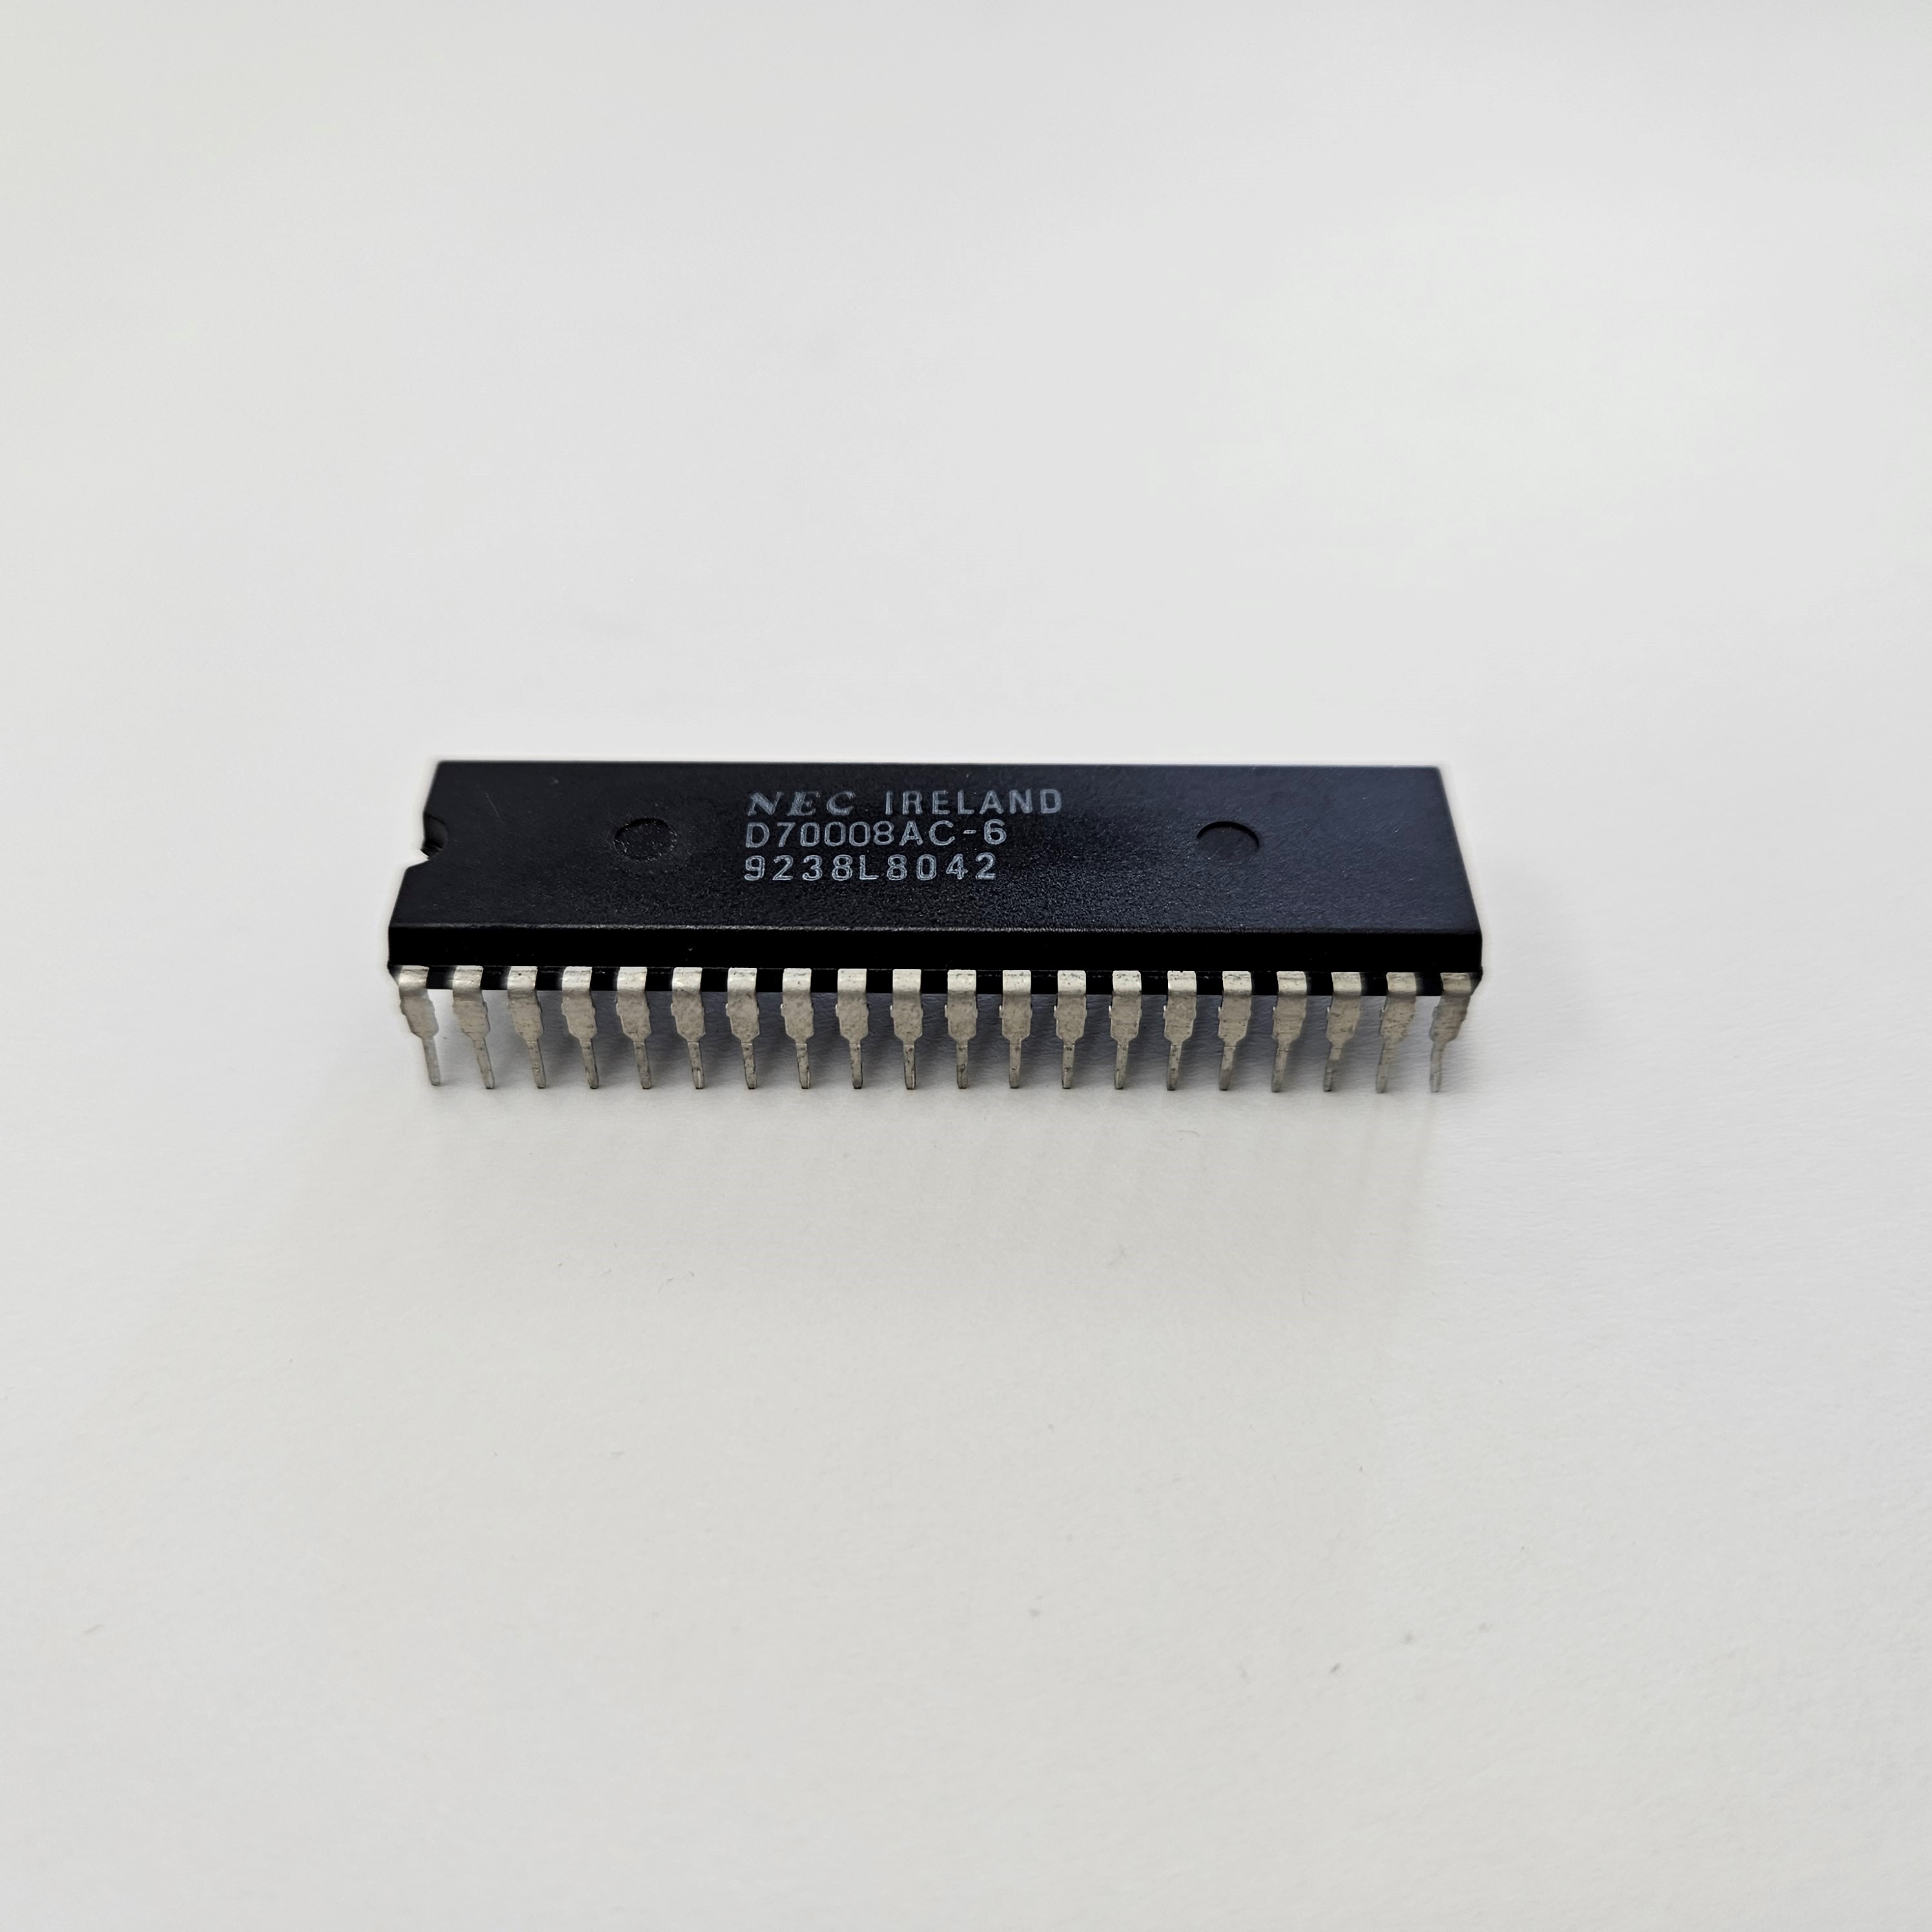 D70008AC-6 NEC INTEGRATED CIRCUIT X1PC